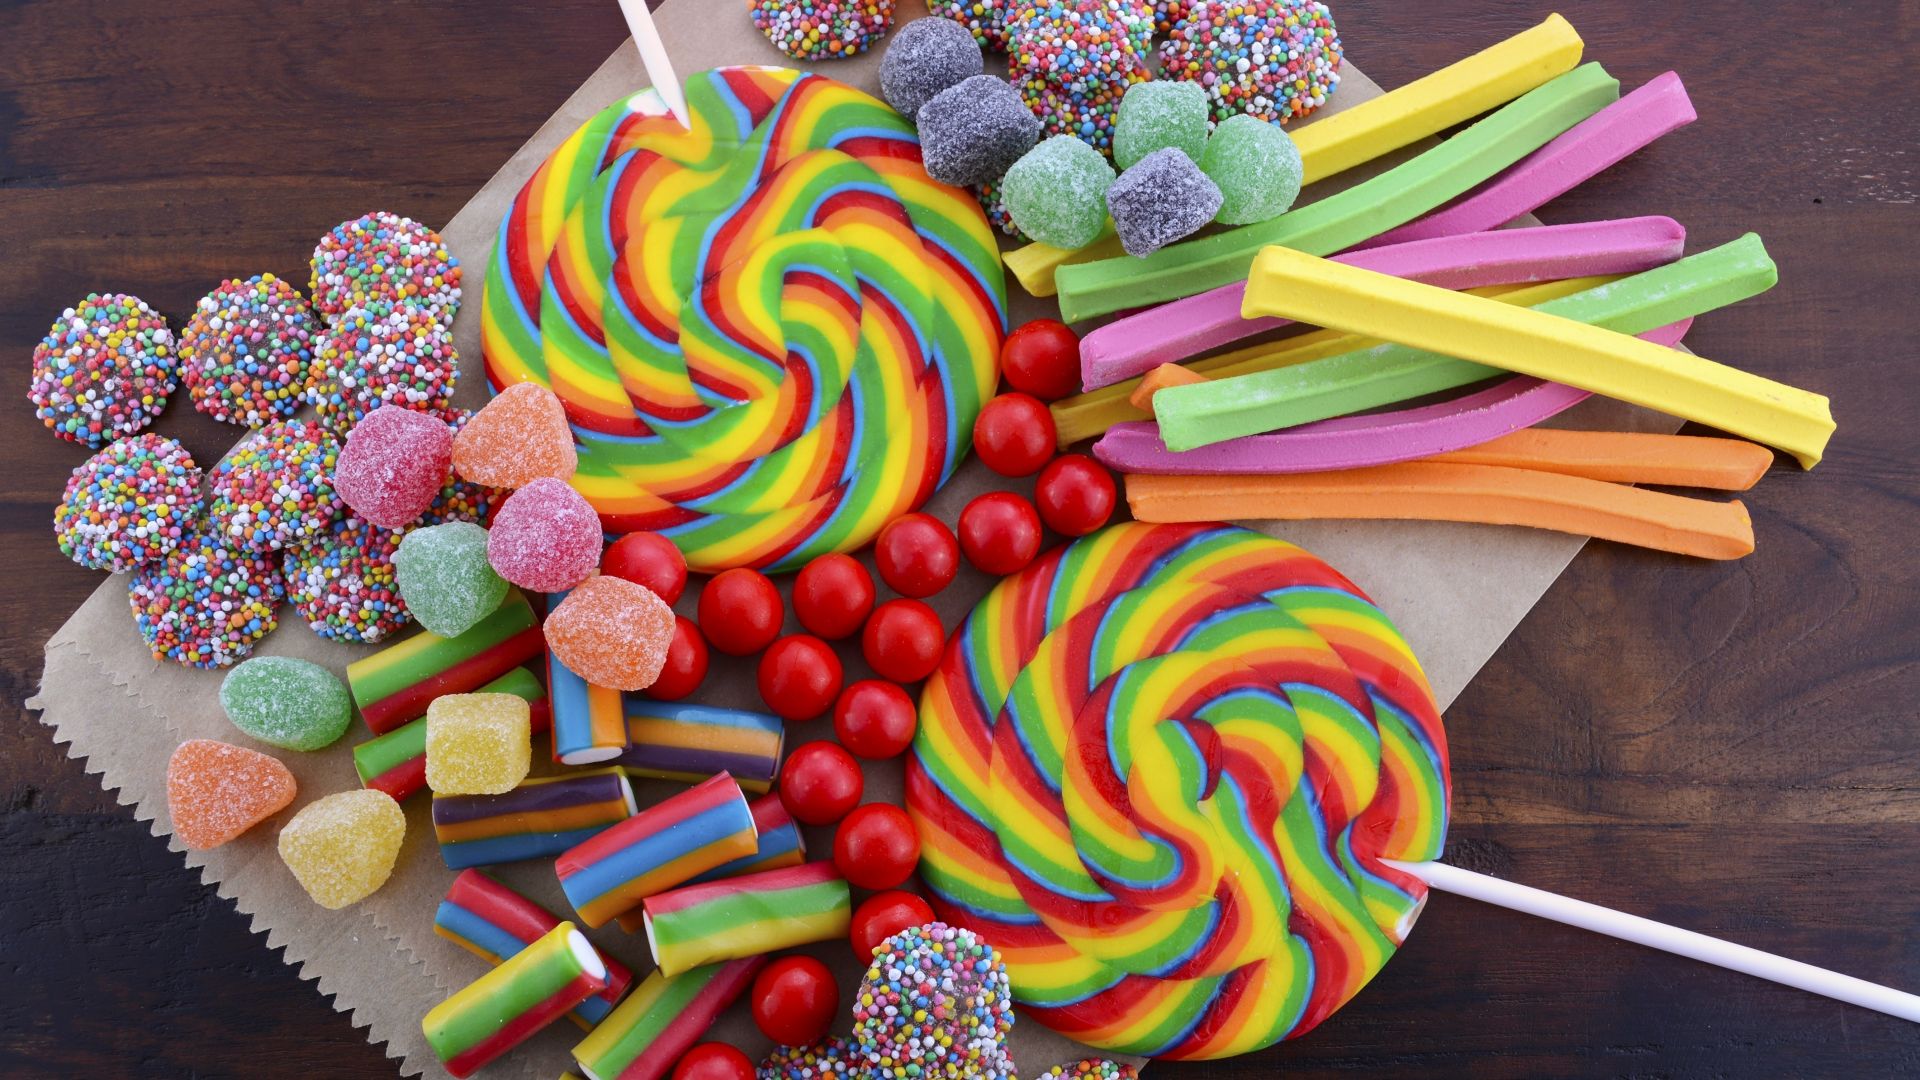 Lollipop Photos Download The BEST Free Lollipop Stock Photos  HD Images